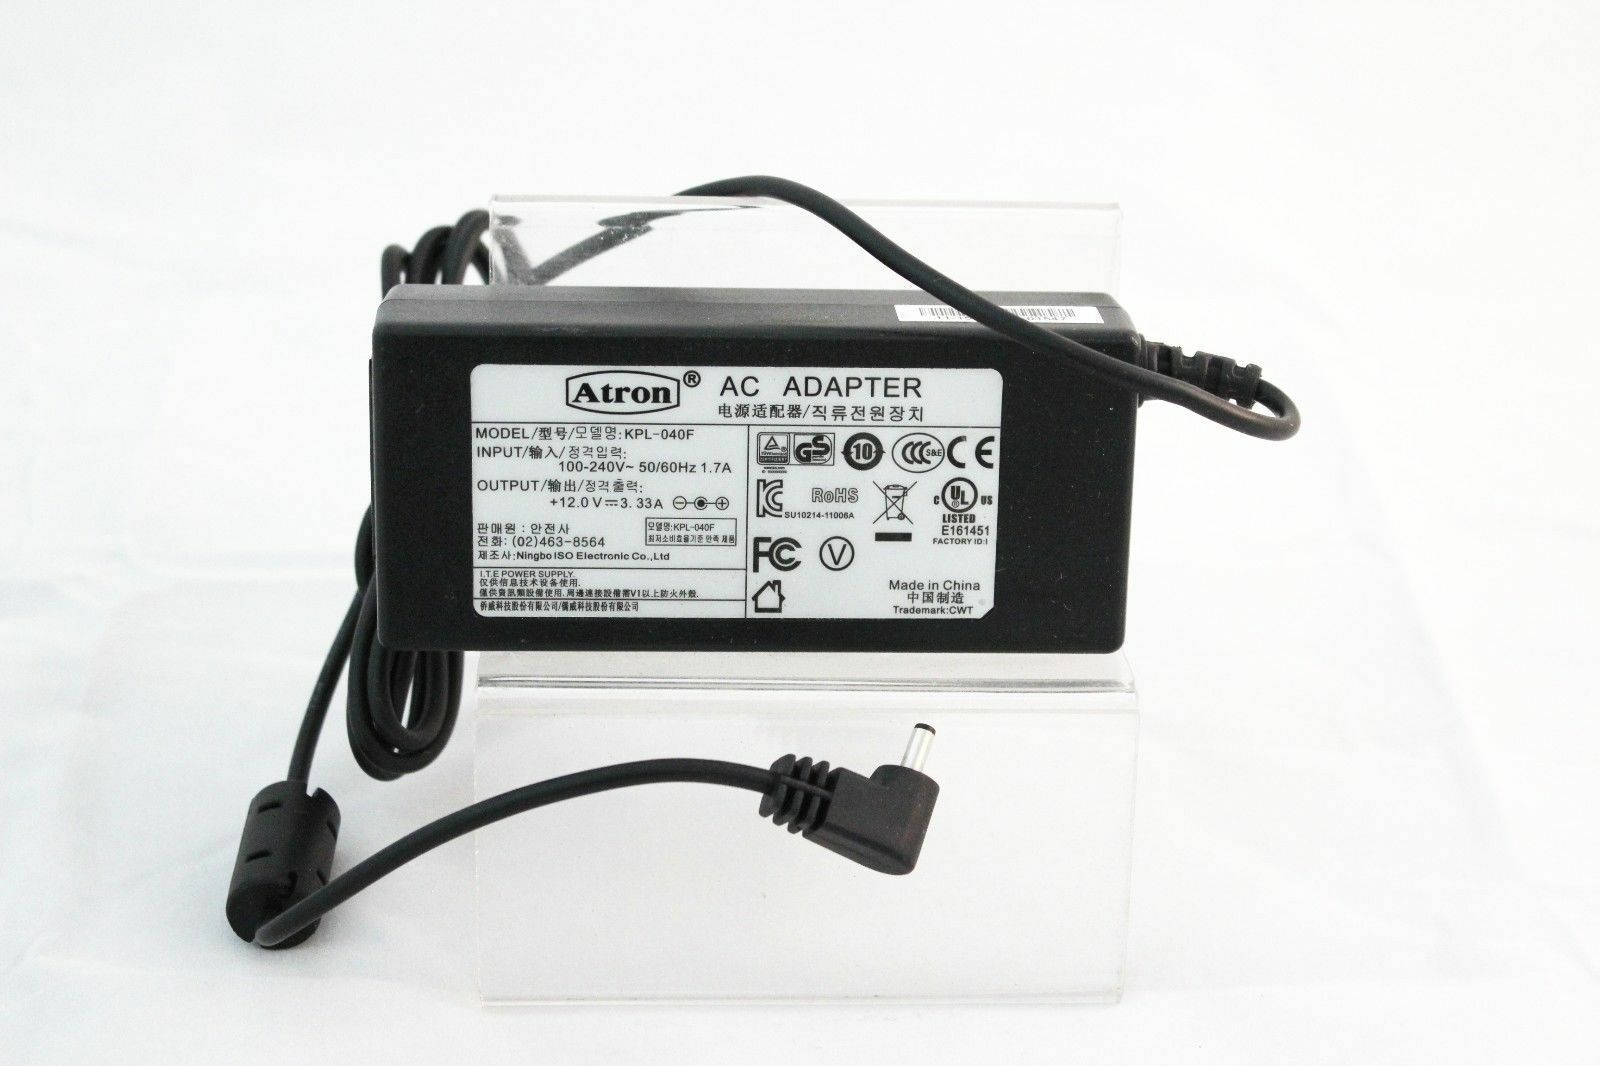 Atron AC POWER ADAPTER KPL-040F 100-240V INPUT 50/60Hz 1.7A OUTPUT +12.0V-3.33A Item Specification Brand : Atron Type